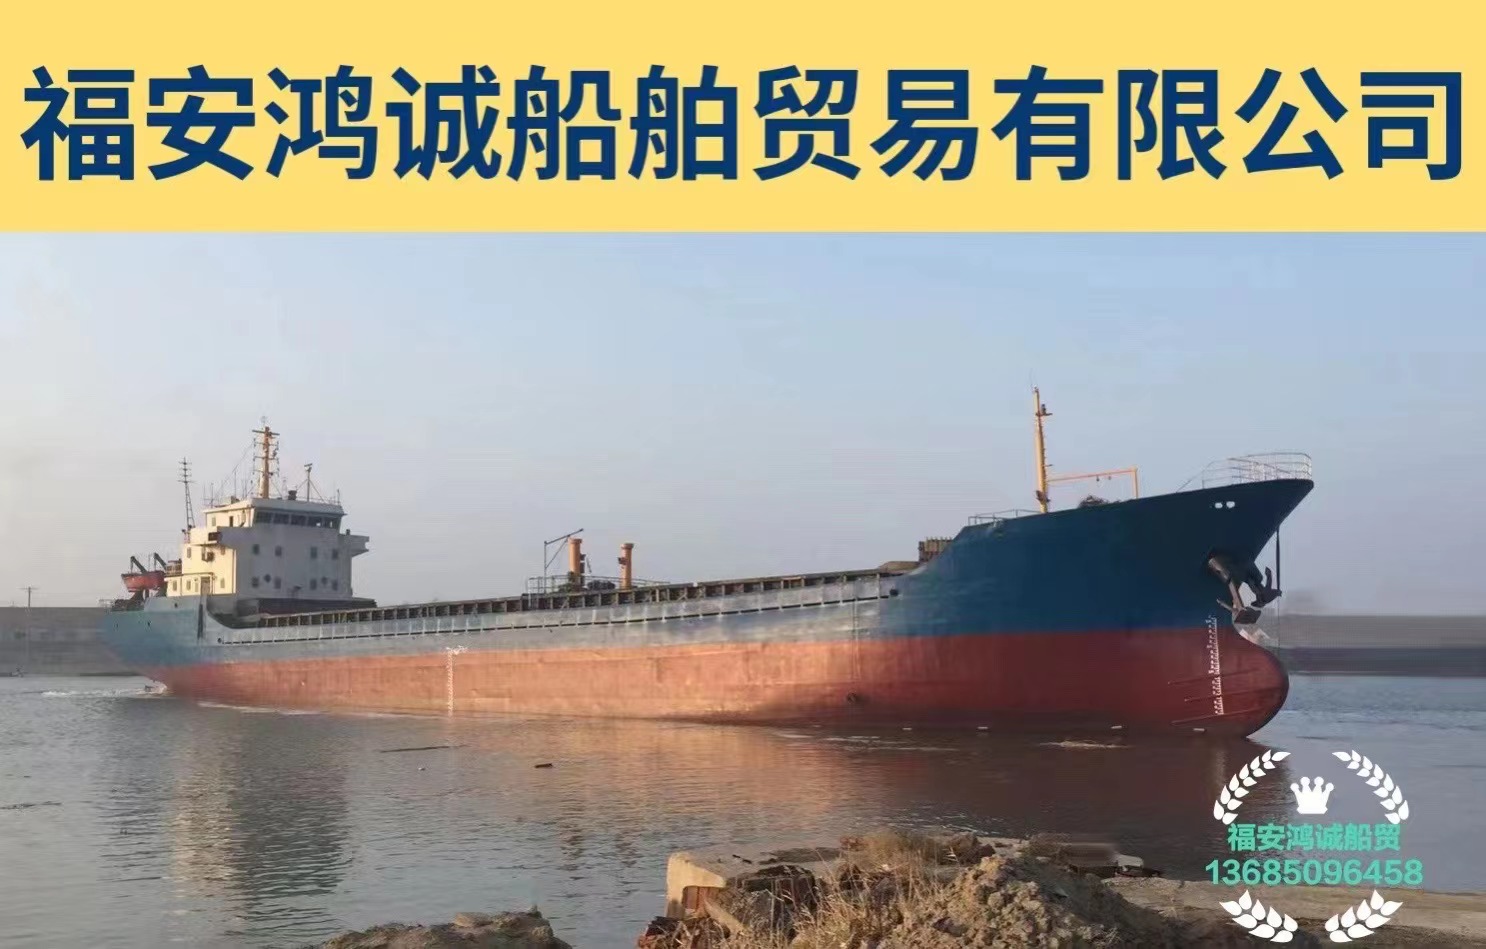 出售3300吨干货船 建造地址：浙江 建造年份：2004年12月